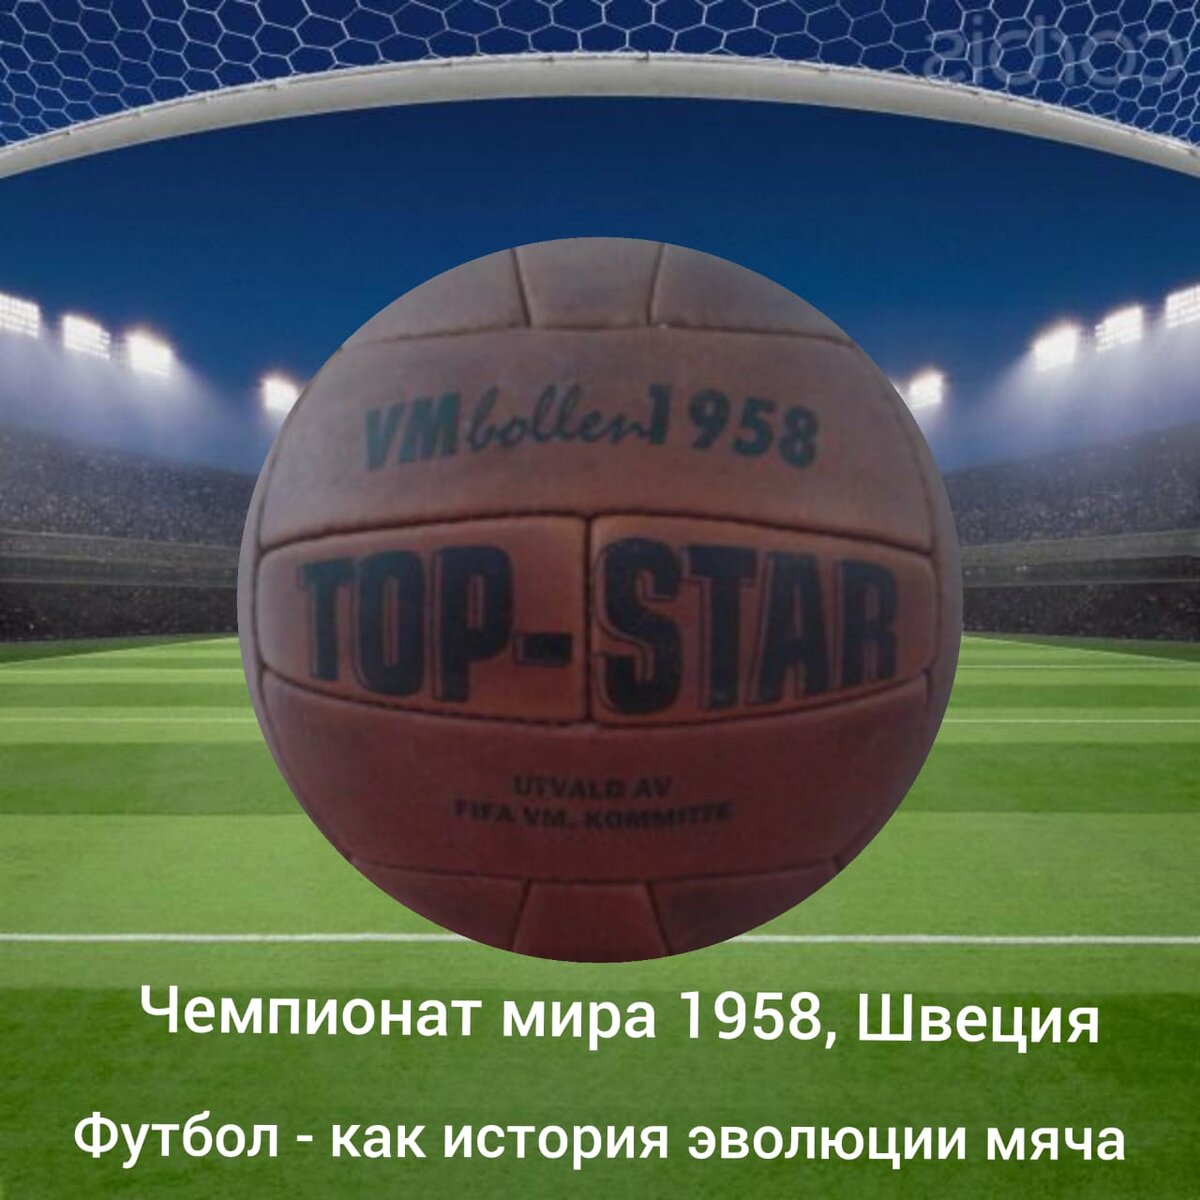 Впервые в истории чемпионата мира, ФИФА организовала конкурс для выбора мячей на Чемпионата Мира 1958 года.